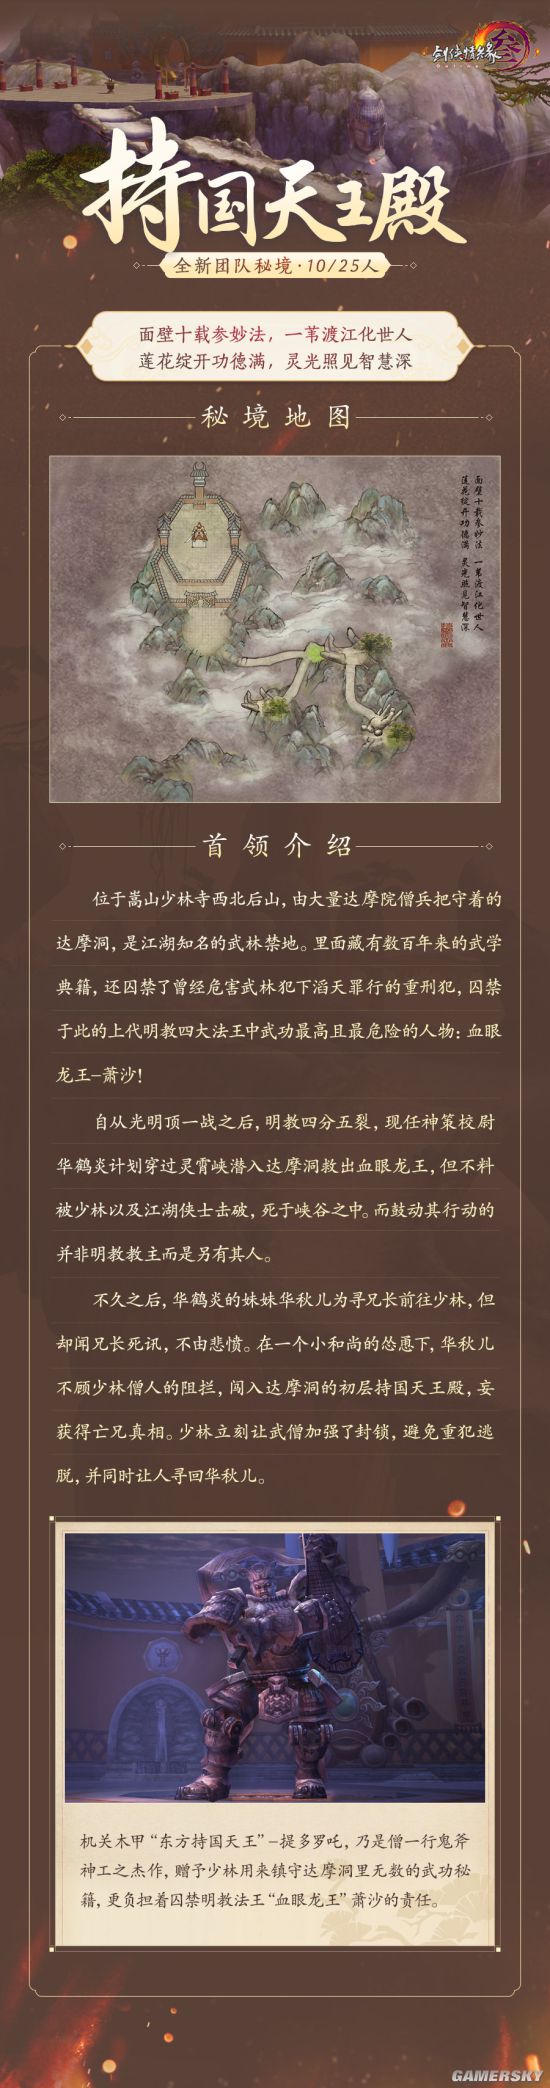 《剑网3》怀旧服单首领团队秘境下周开放大唐江湖再起狂澜